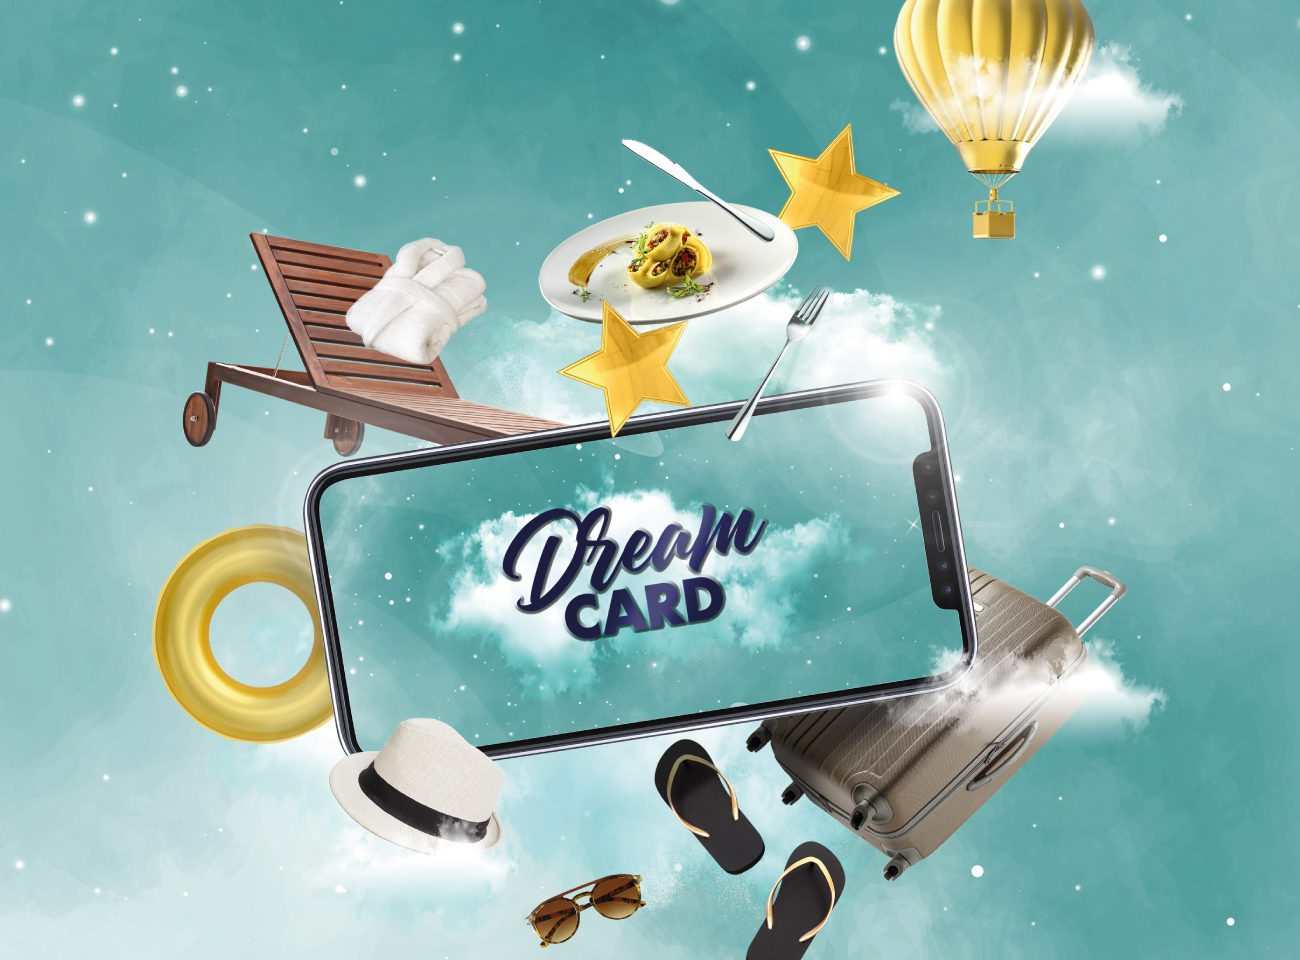 espai-dream-card-turismo-ddo_eja